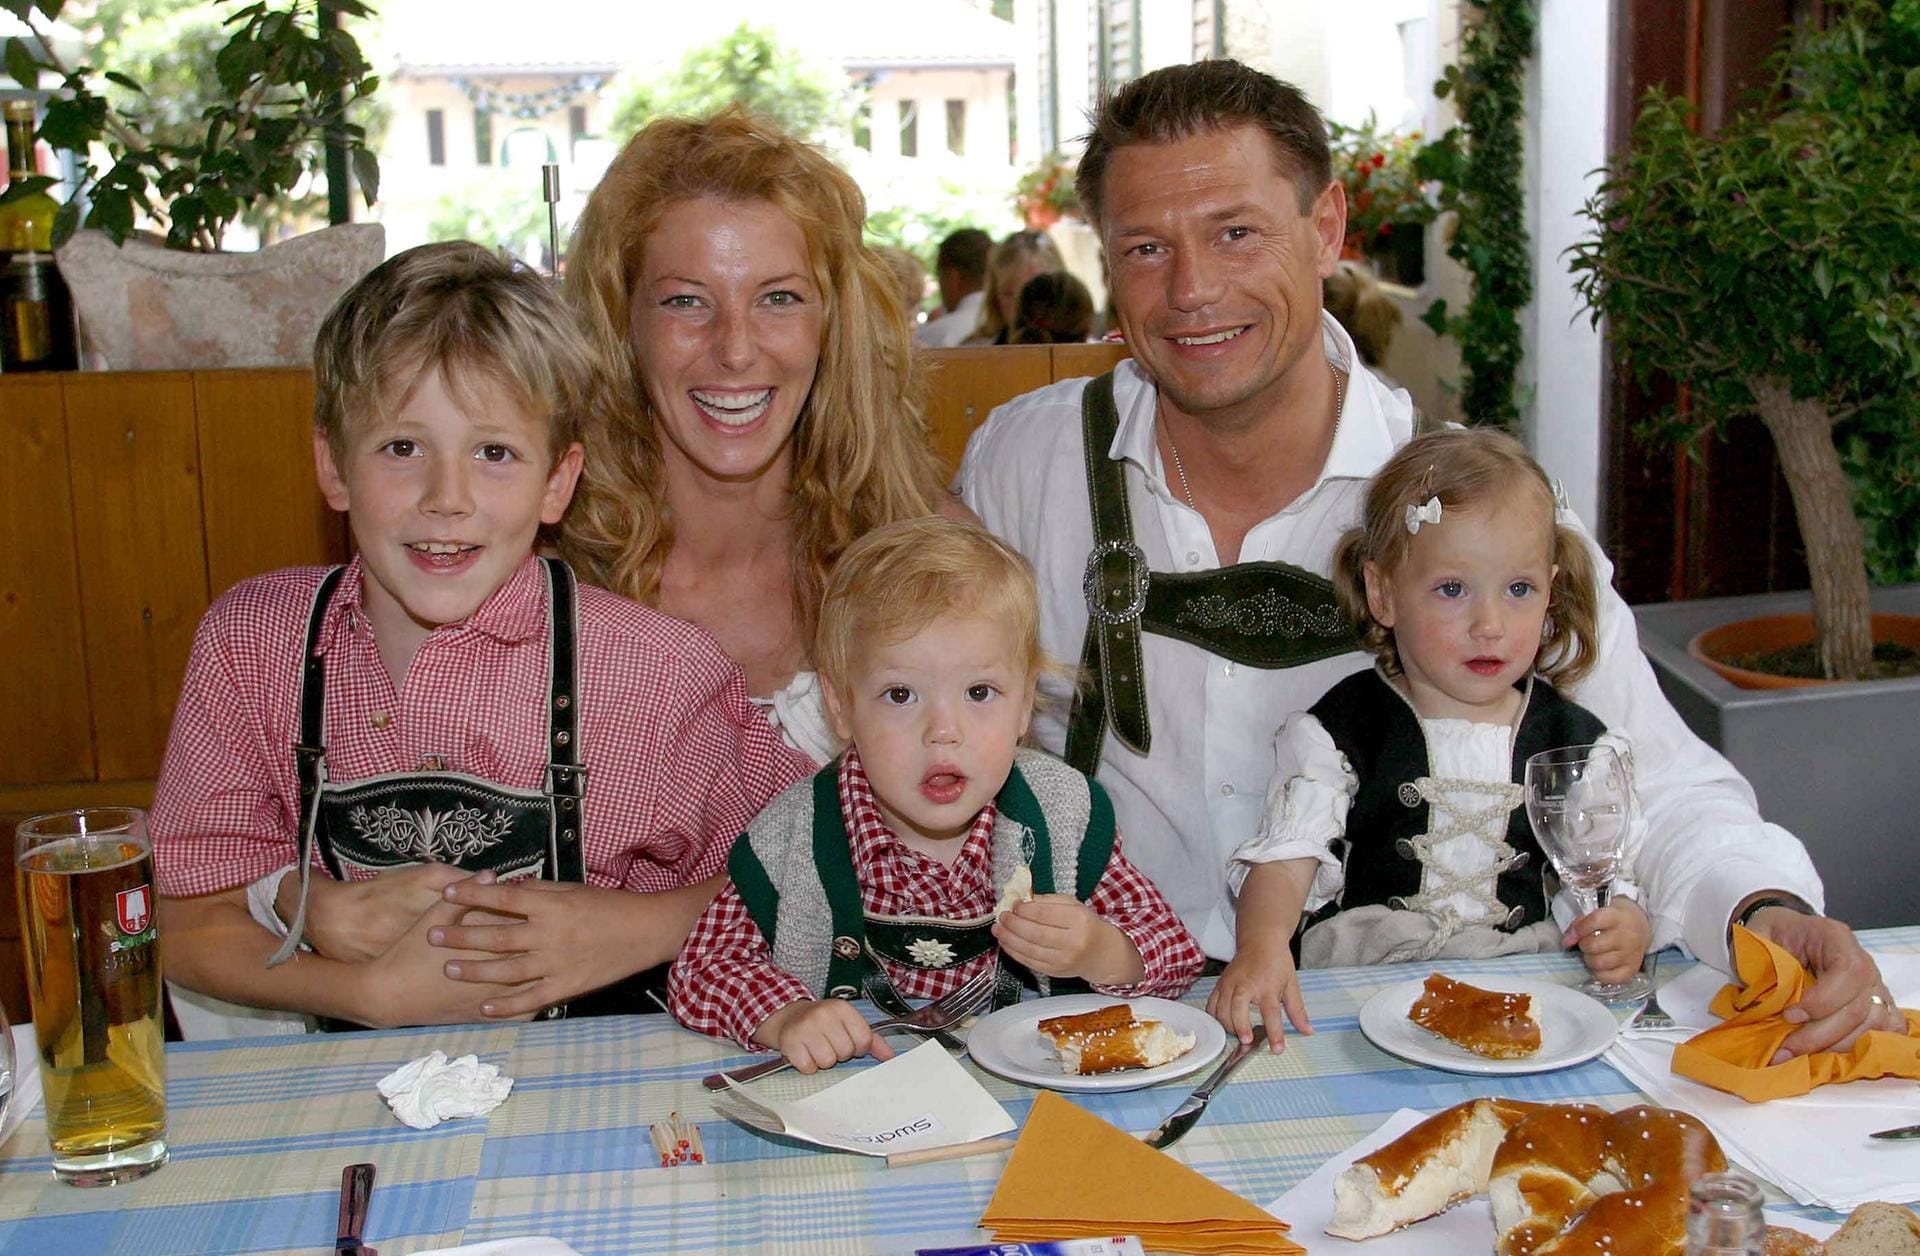 Familienidylle: Von 2000 bis 2008 war Giulia Siegel mit dem Unternehmer Hans Wehrmann verheiratet. Gemeinsam haben sie drei Kinder: Marlon (li.), Nathan (Mitte) und Mia (r.).